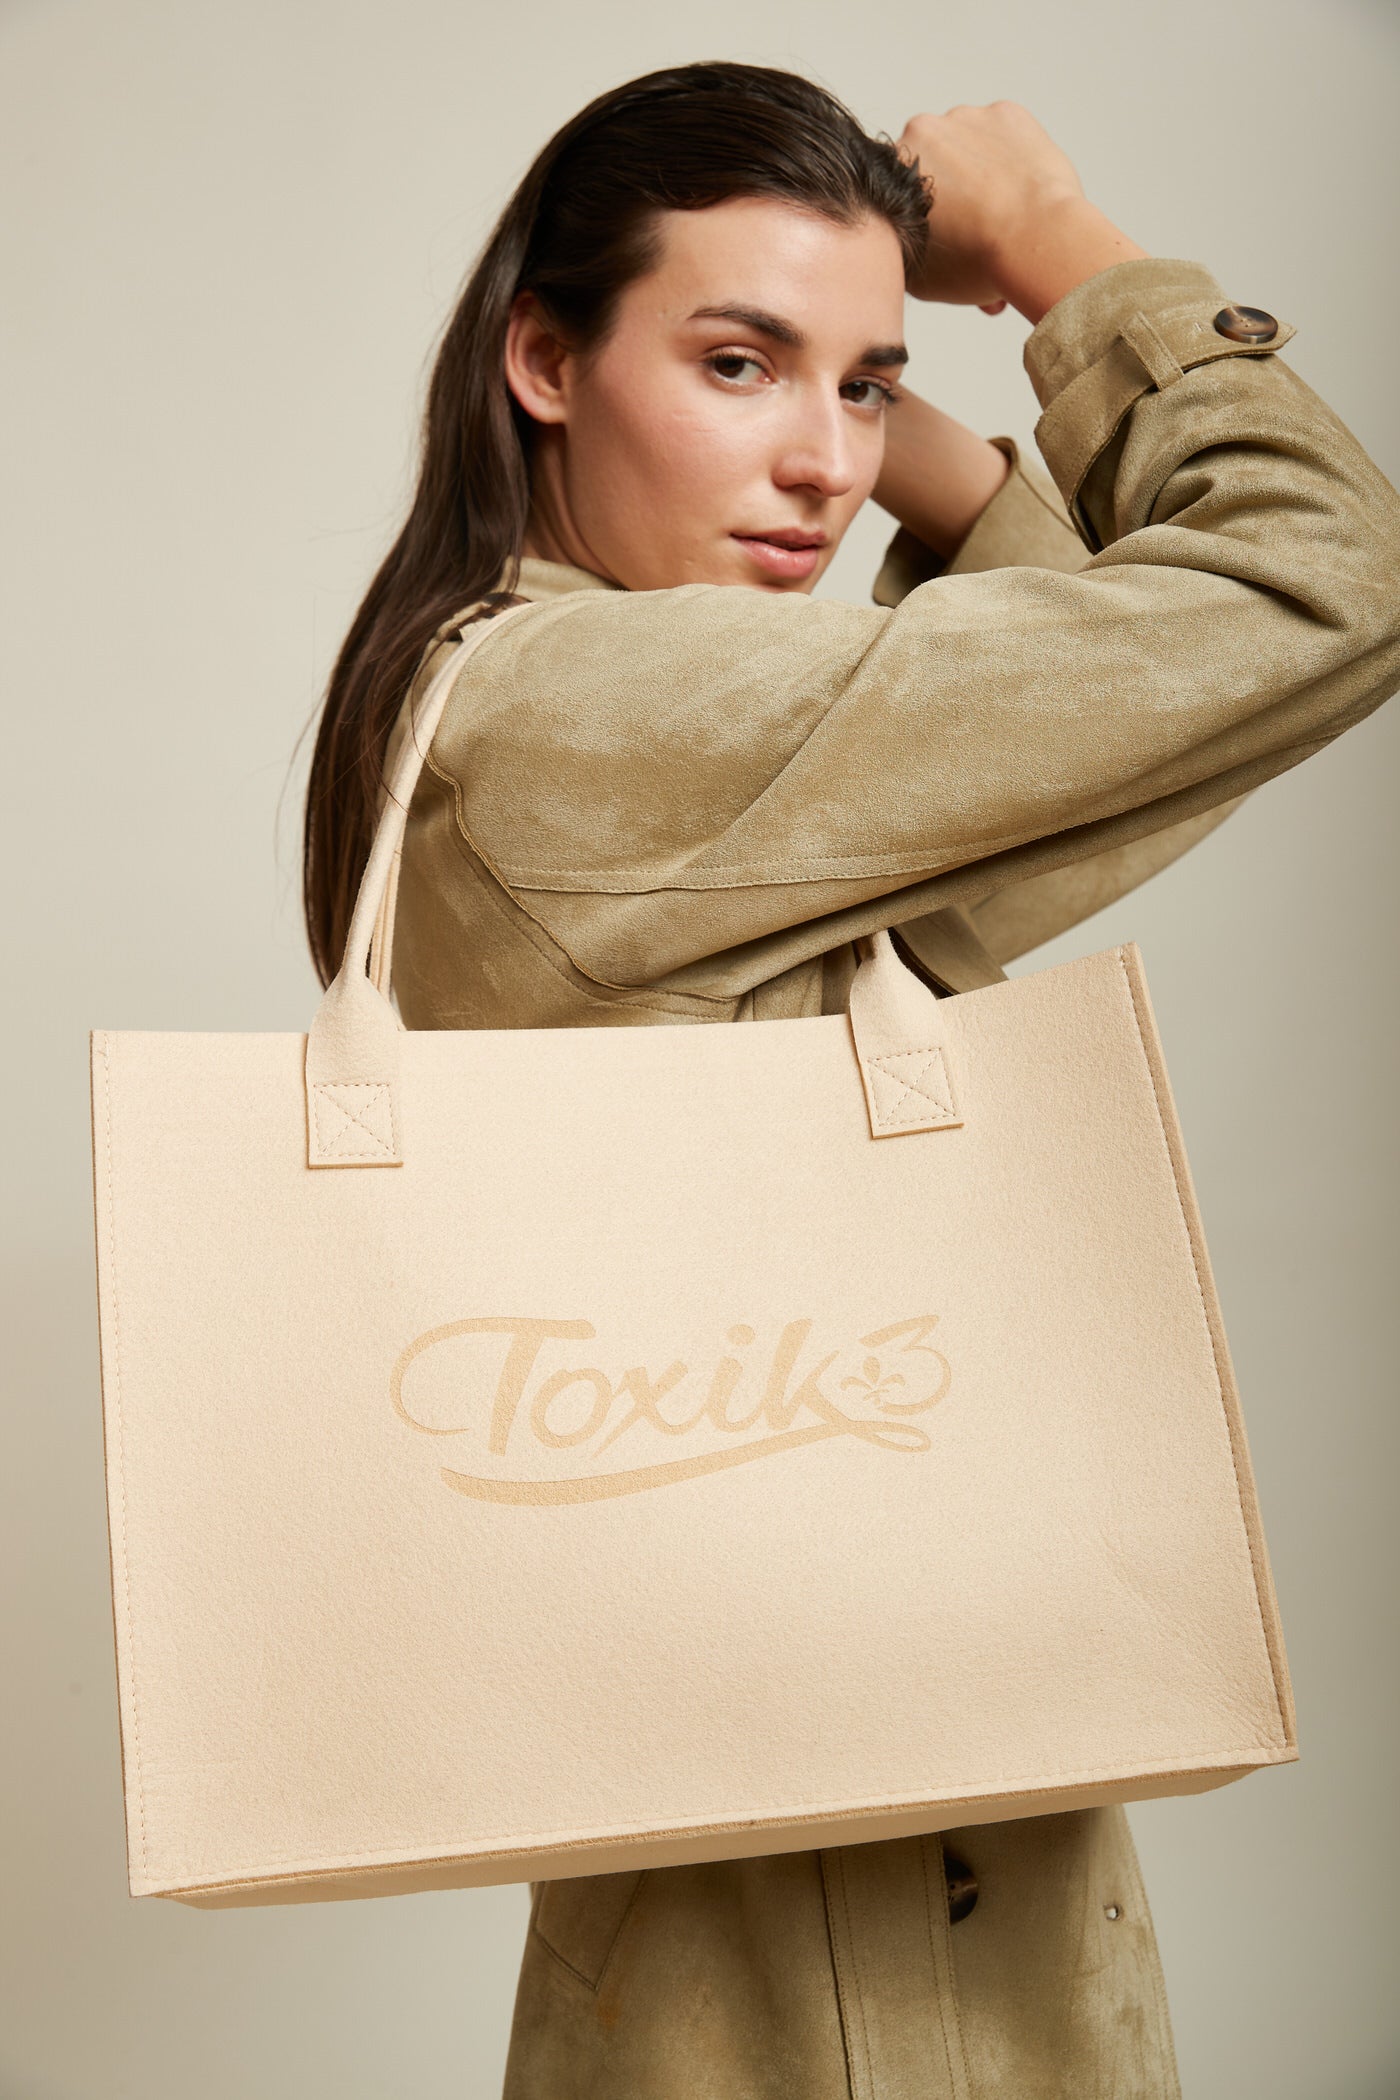 Toxik3 felt bag